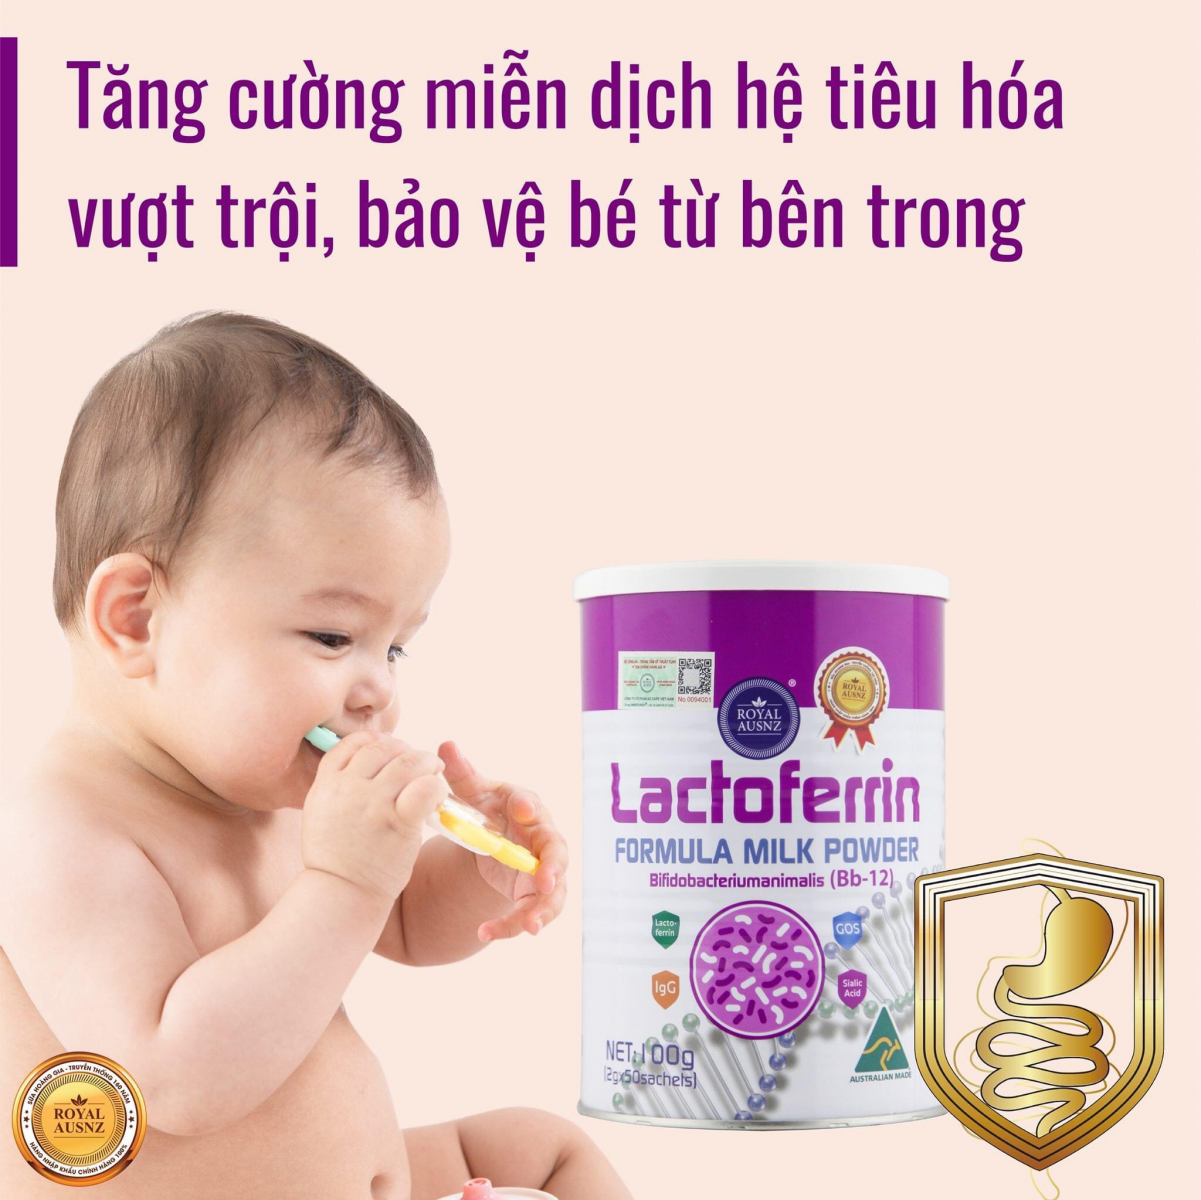 Sữa Hoàng Gia Lactoferrin hồng chứa bột sữa non trong thành phần cung cấp dinh dưỡng hoàn hảo cho bé tăng cân khỏe mạnh